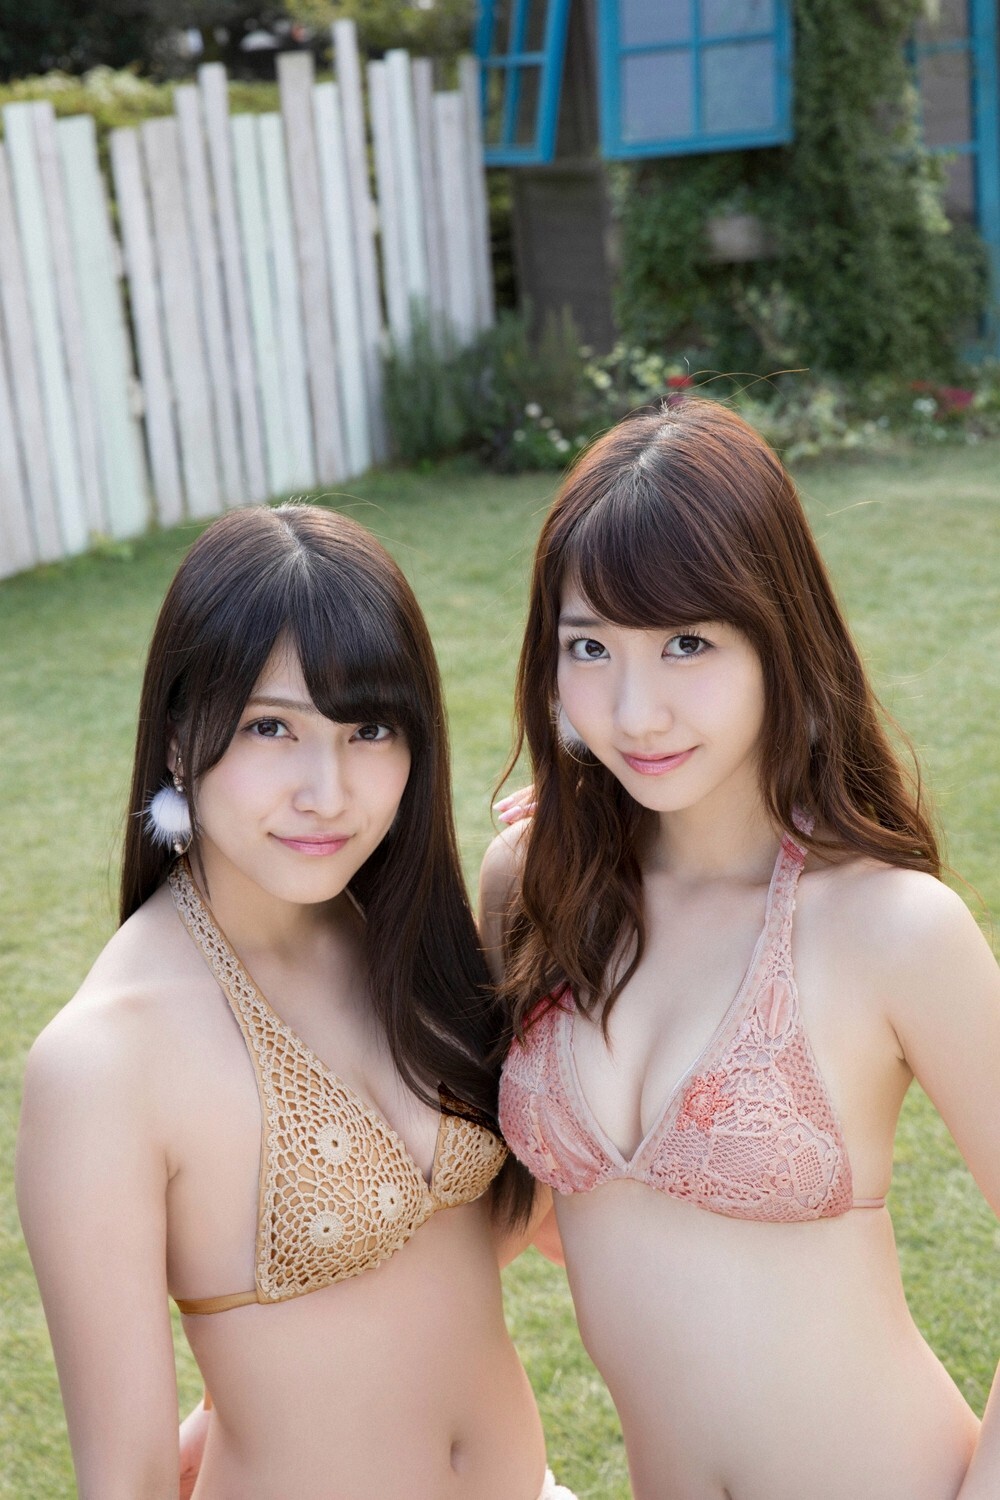 [yo-web] Vol. 633 AKB48 Yuki Kashiwagi ana Kashiwagi Anna iyama iruka. First dream